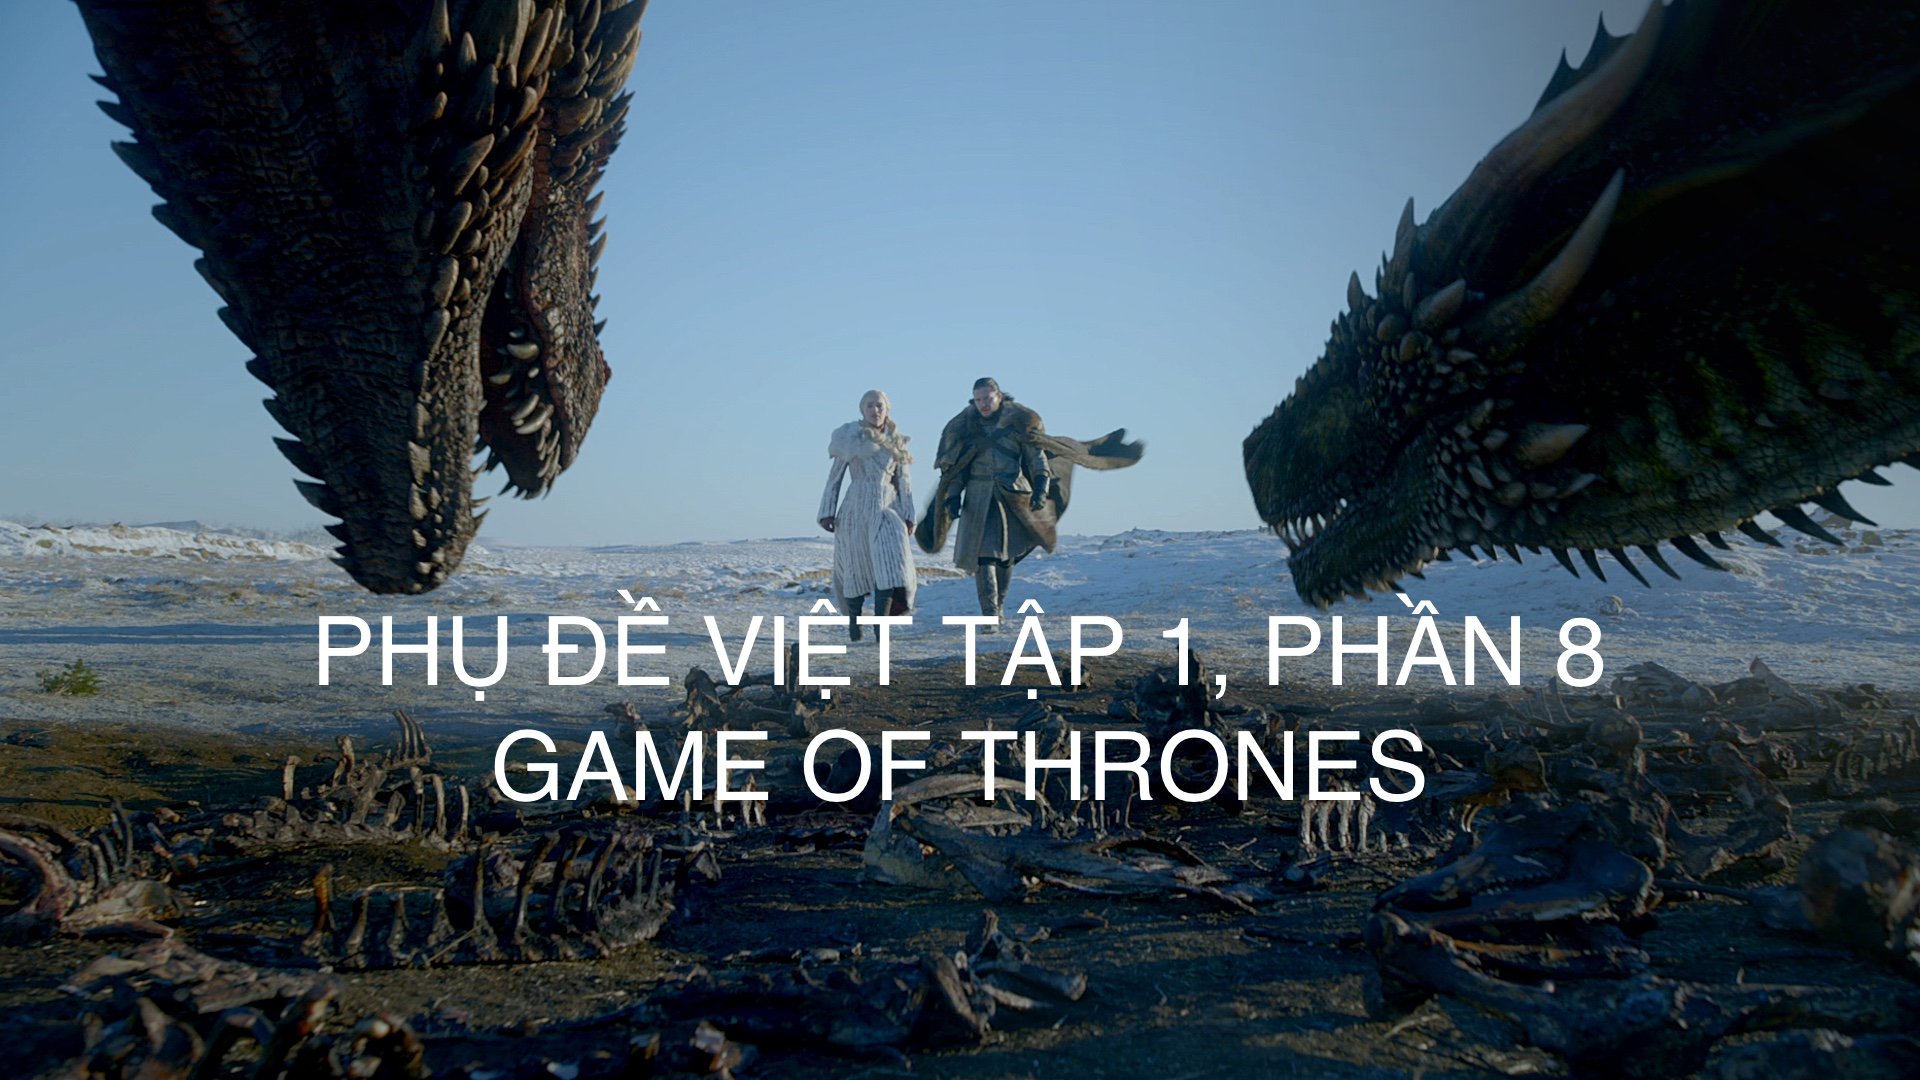 Phụ đề tiếng Việt Phim Game Of Thrones Phần 8, Tập 1